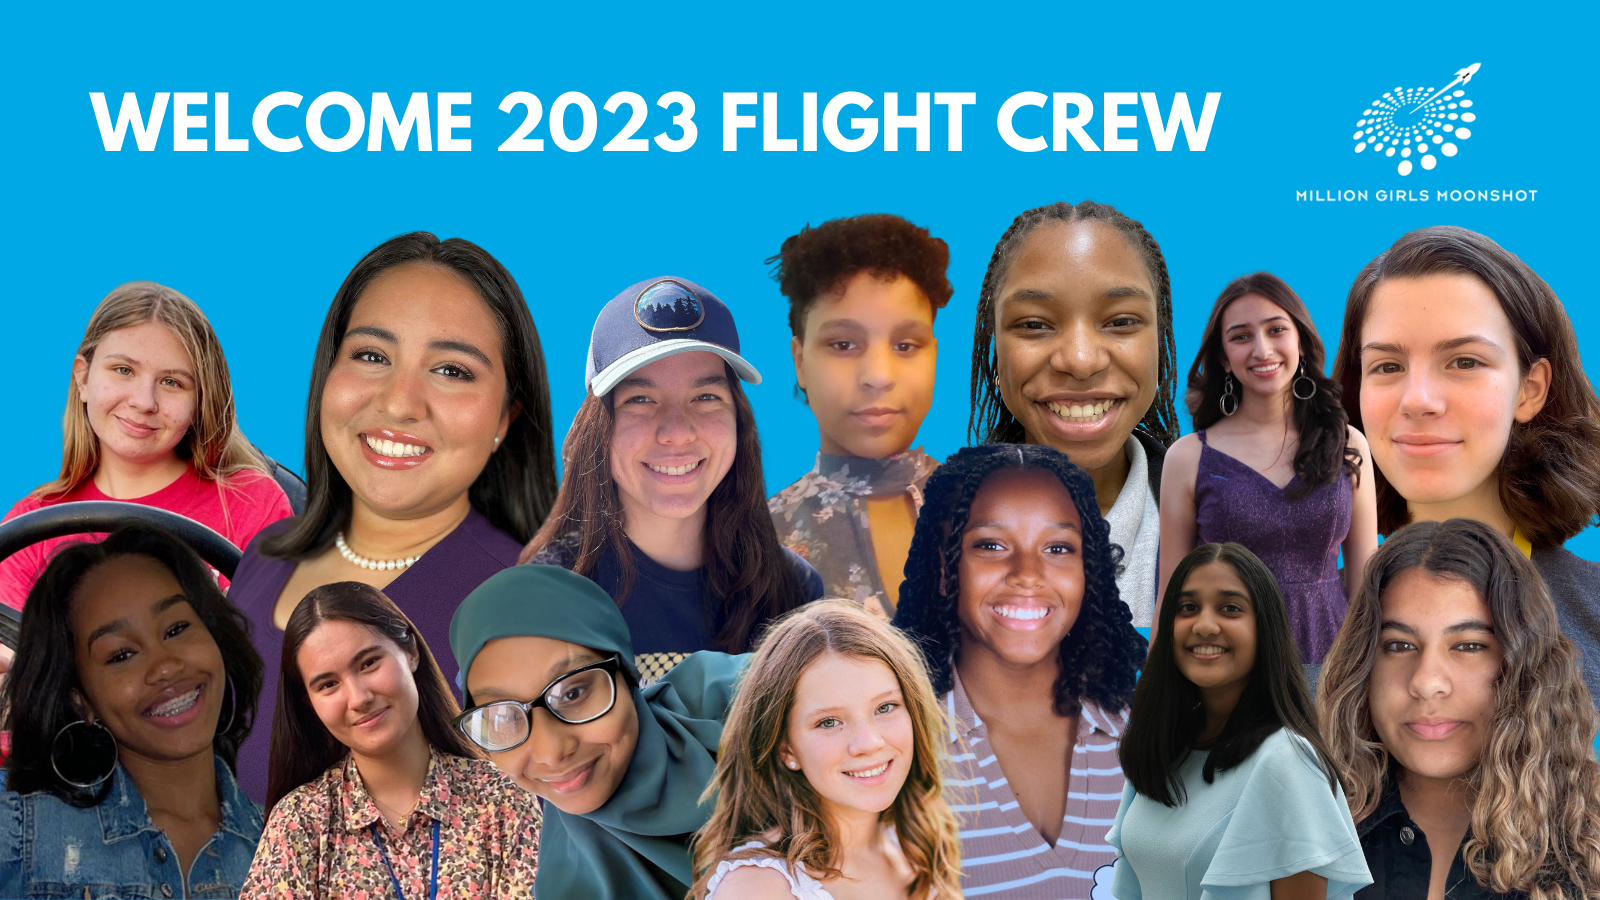 Welcome 2023 Flight crew Twitter